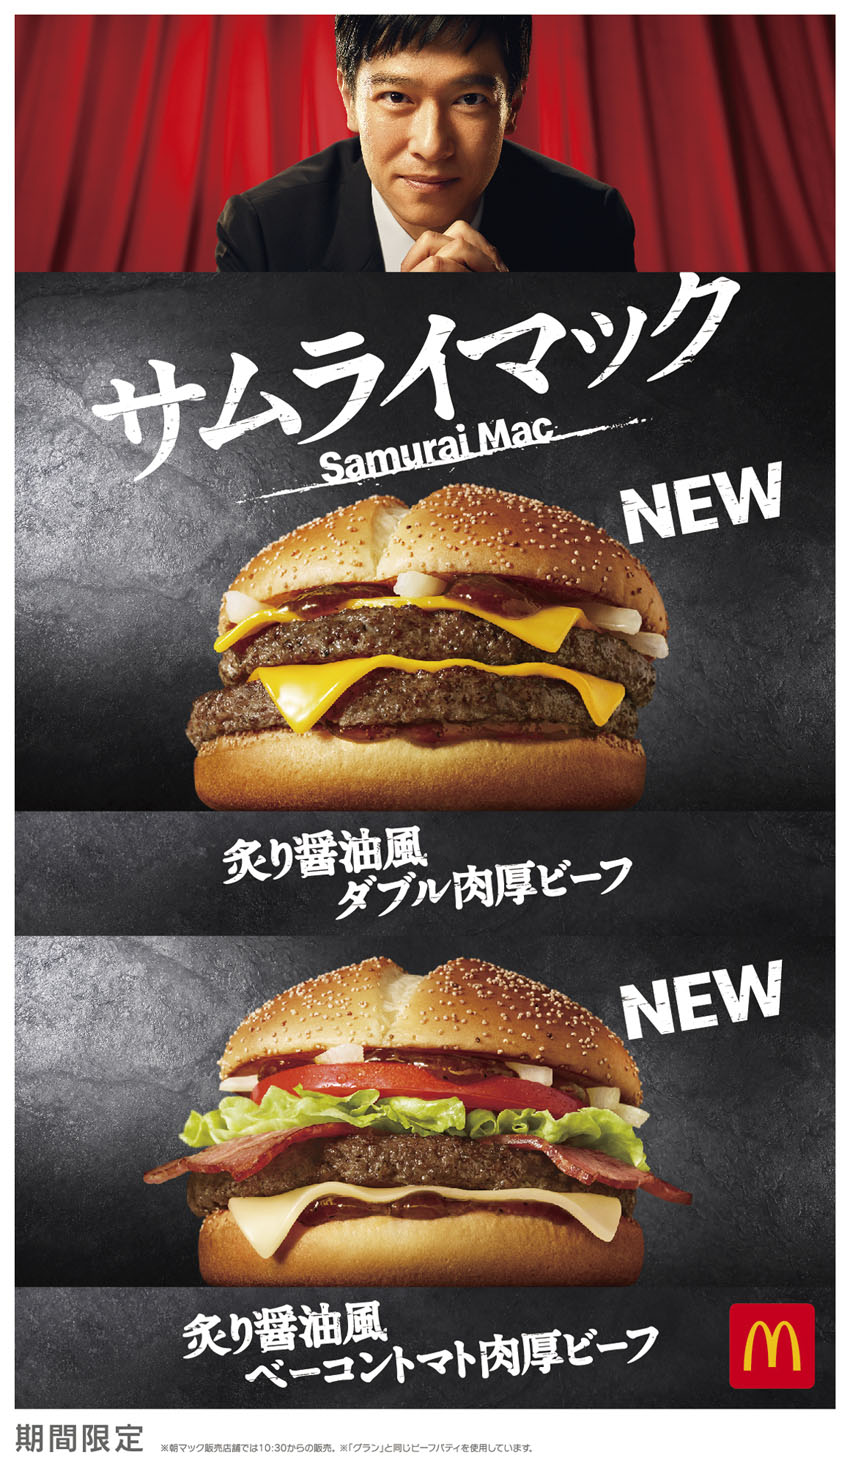 堺雅人 マックの新バーガー「サムライマック」キャンペーンアンバサダーに！「ワクワクするような心がアガる気持ち」になった想い出とは2